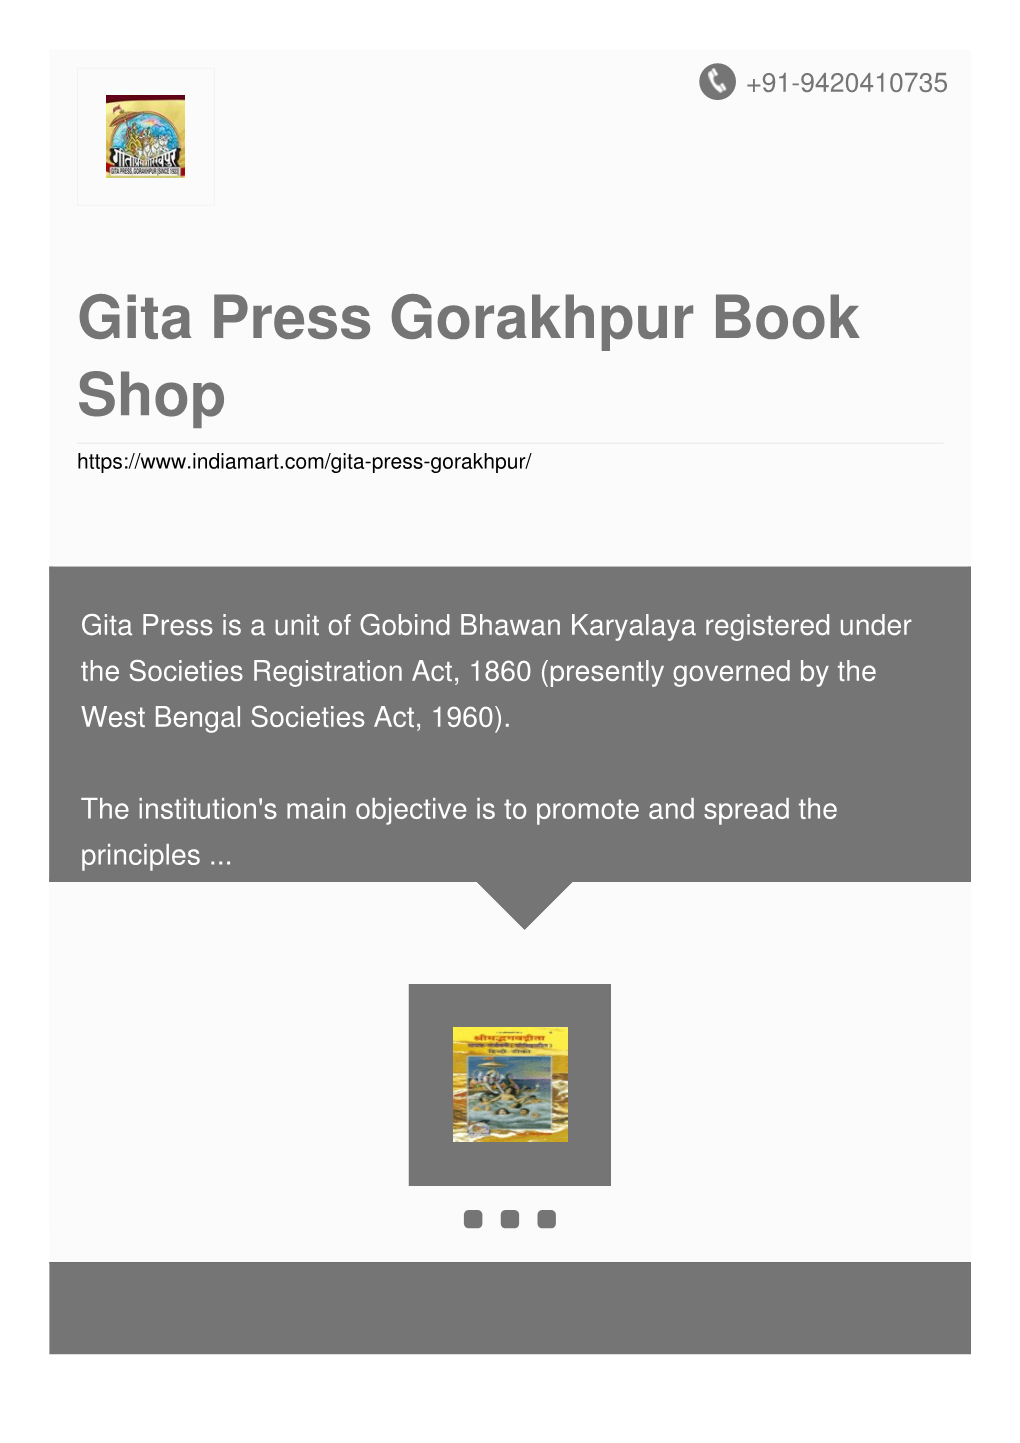 Gita Press Gorakhpur Book Shop